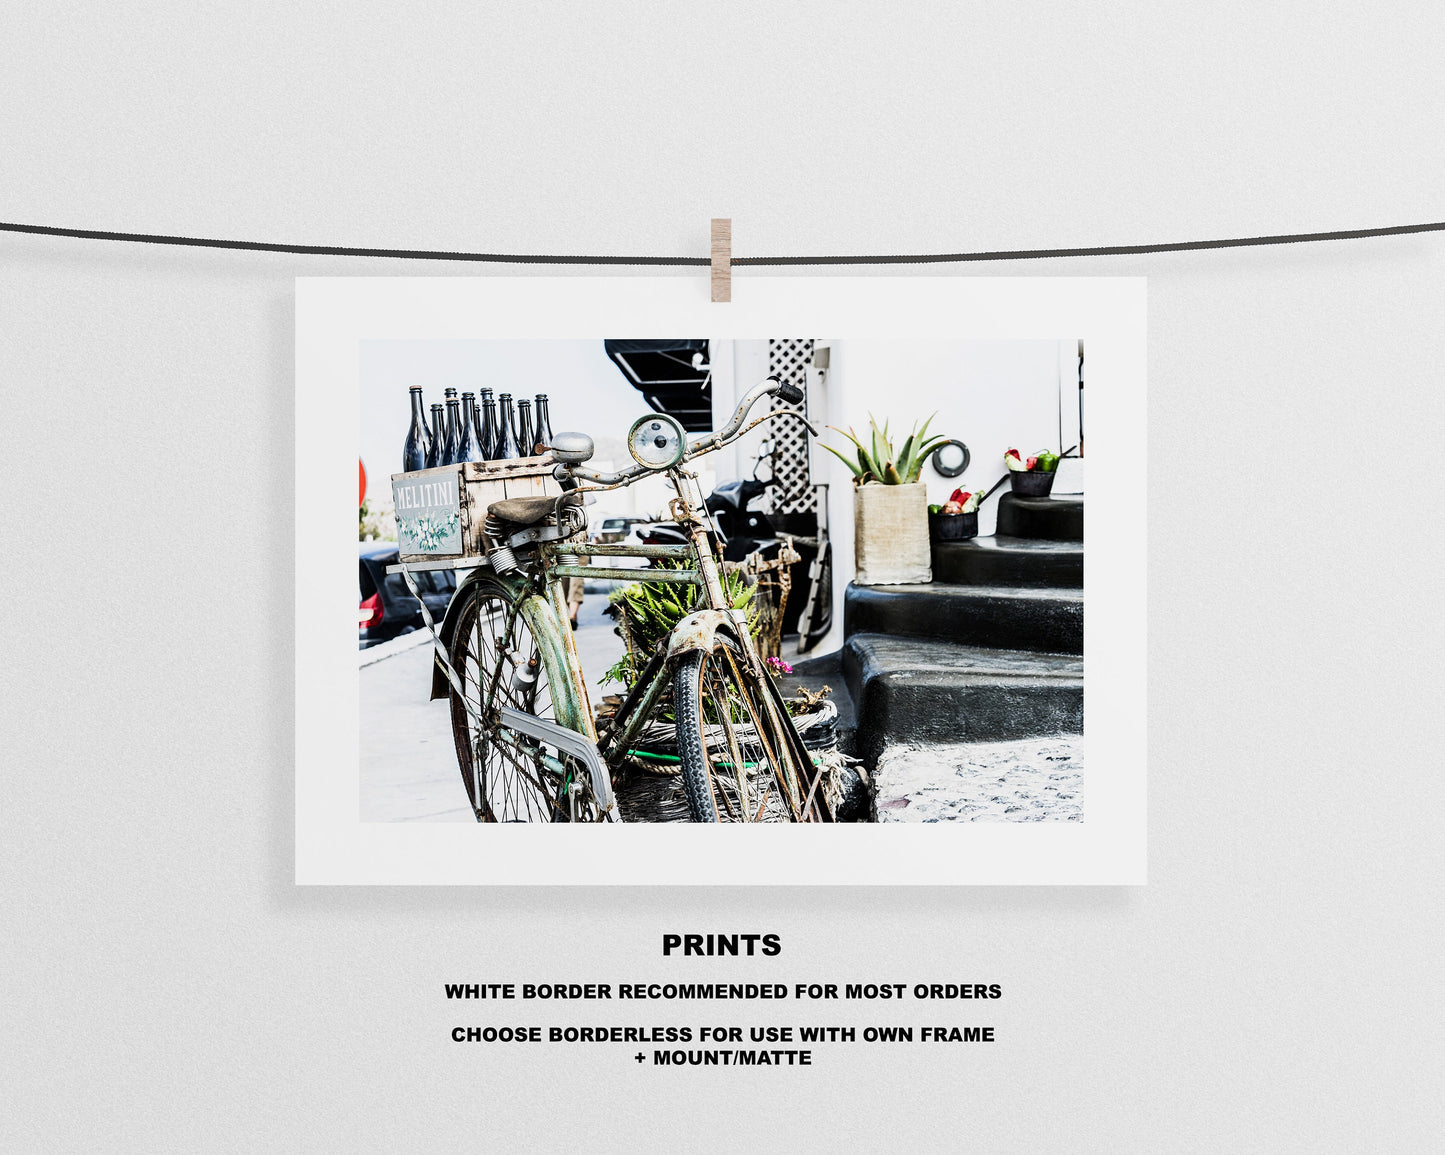 Vintage Bike Print - Greece - Print - Poster - Santorini Photography - Greece Wall Art - Bike Photography - Bike Photo - Bike Poster